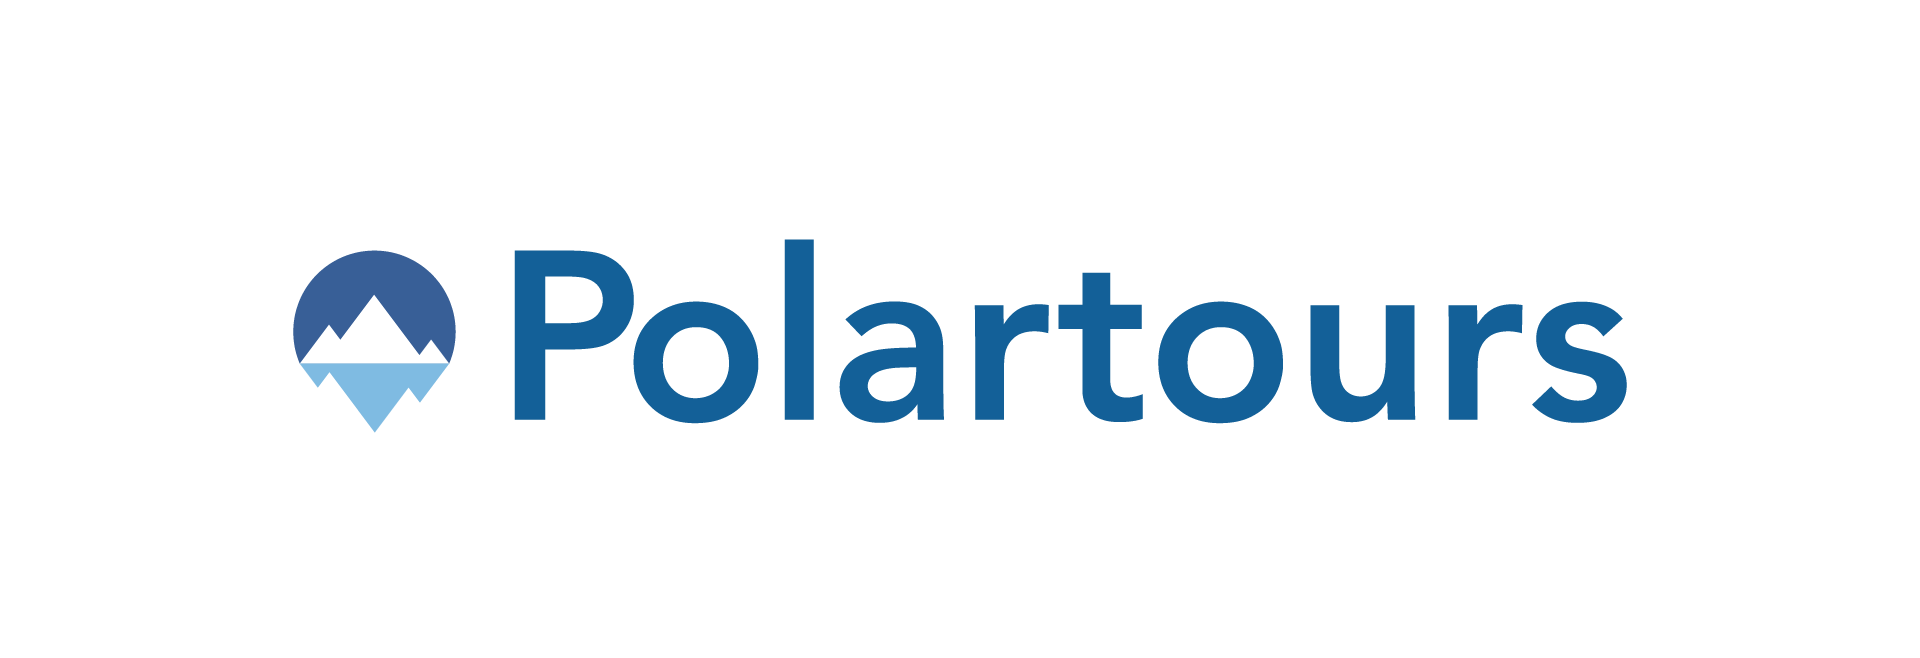 Polartours_logo-3